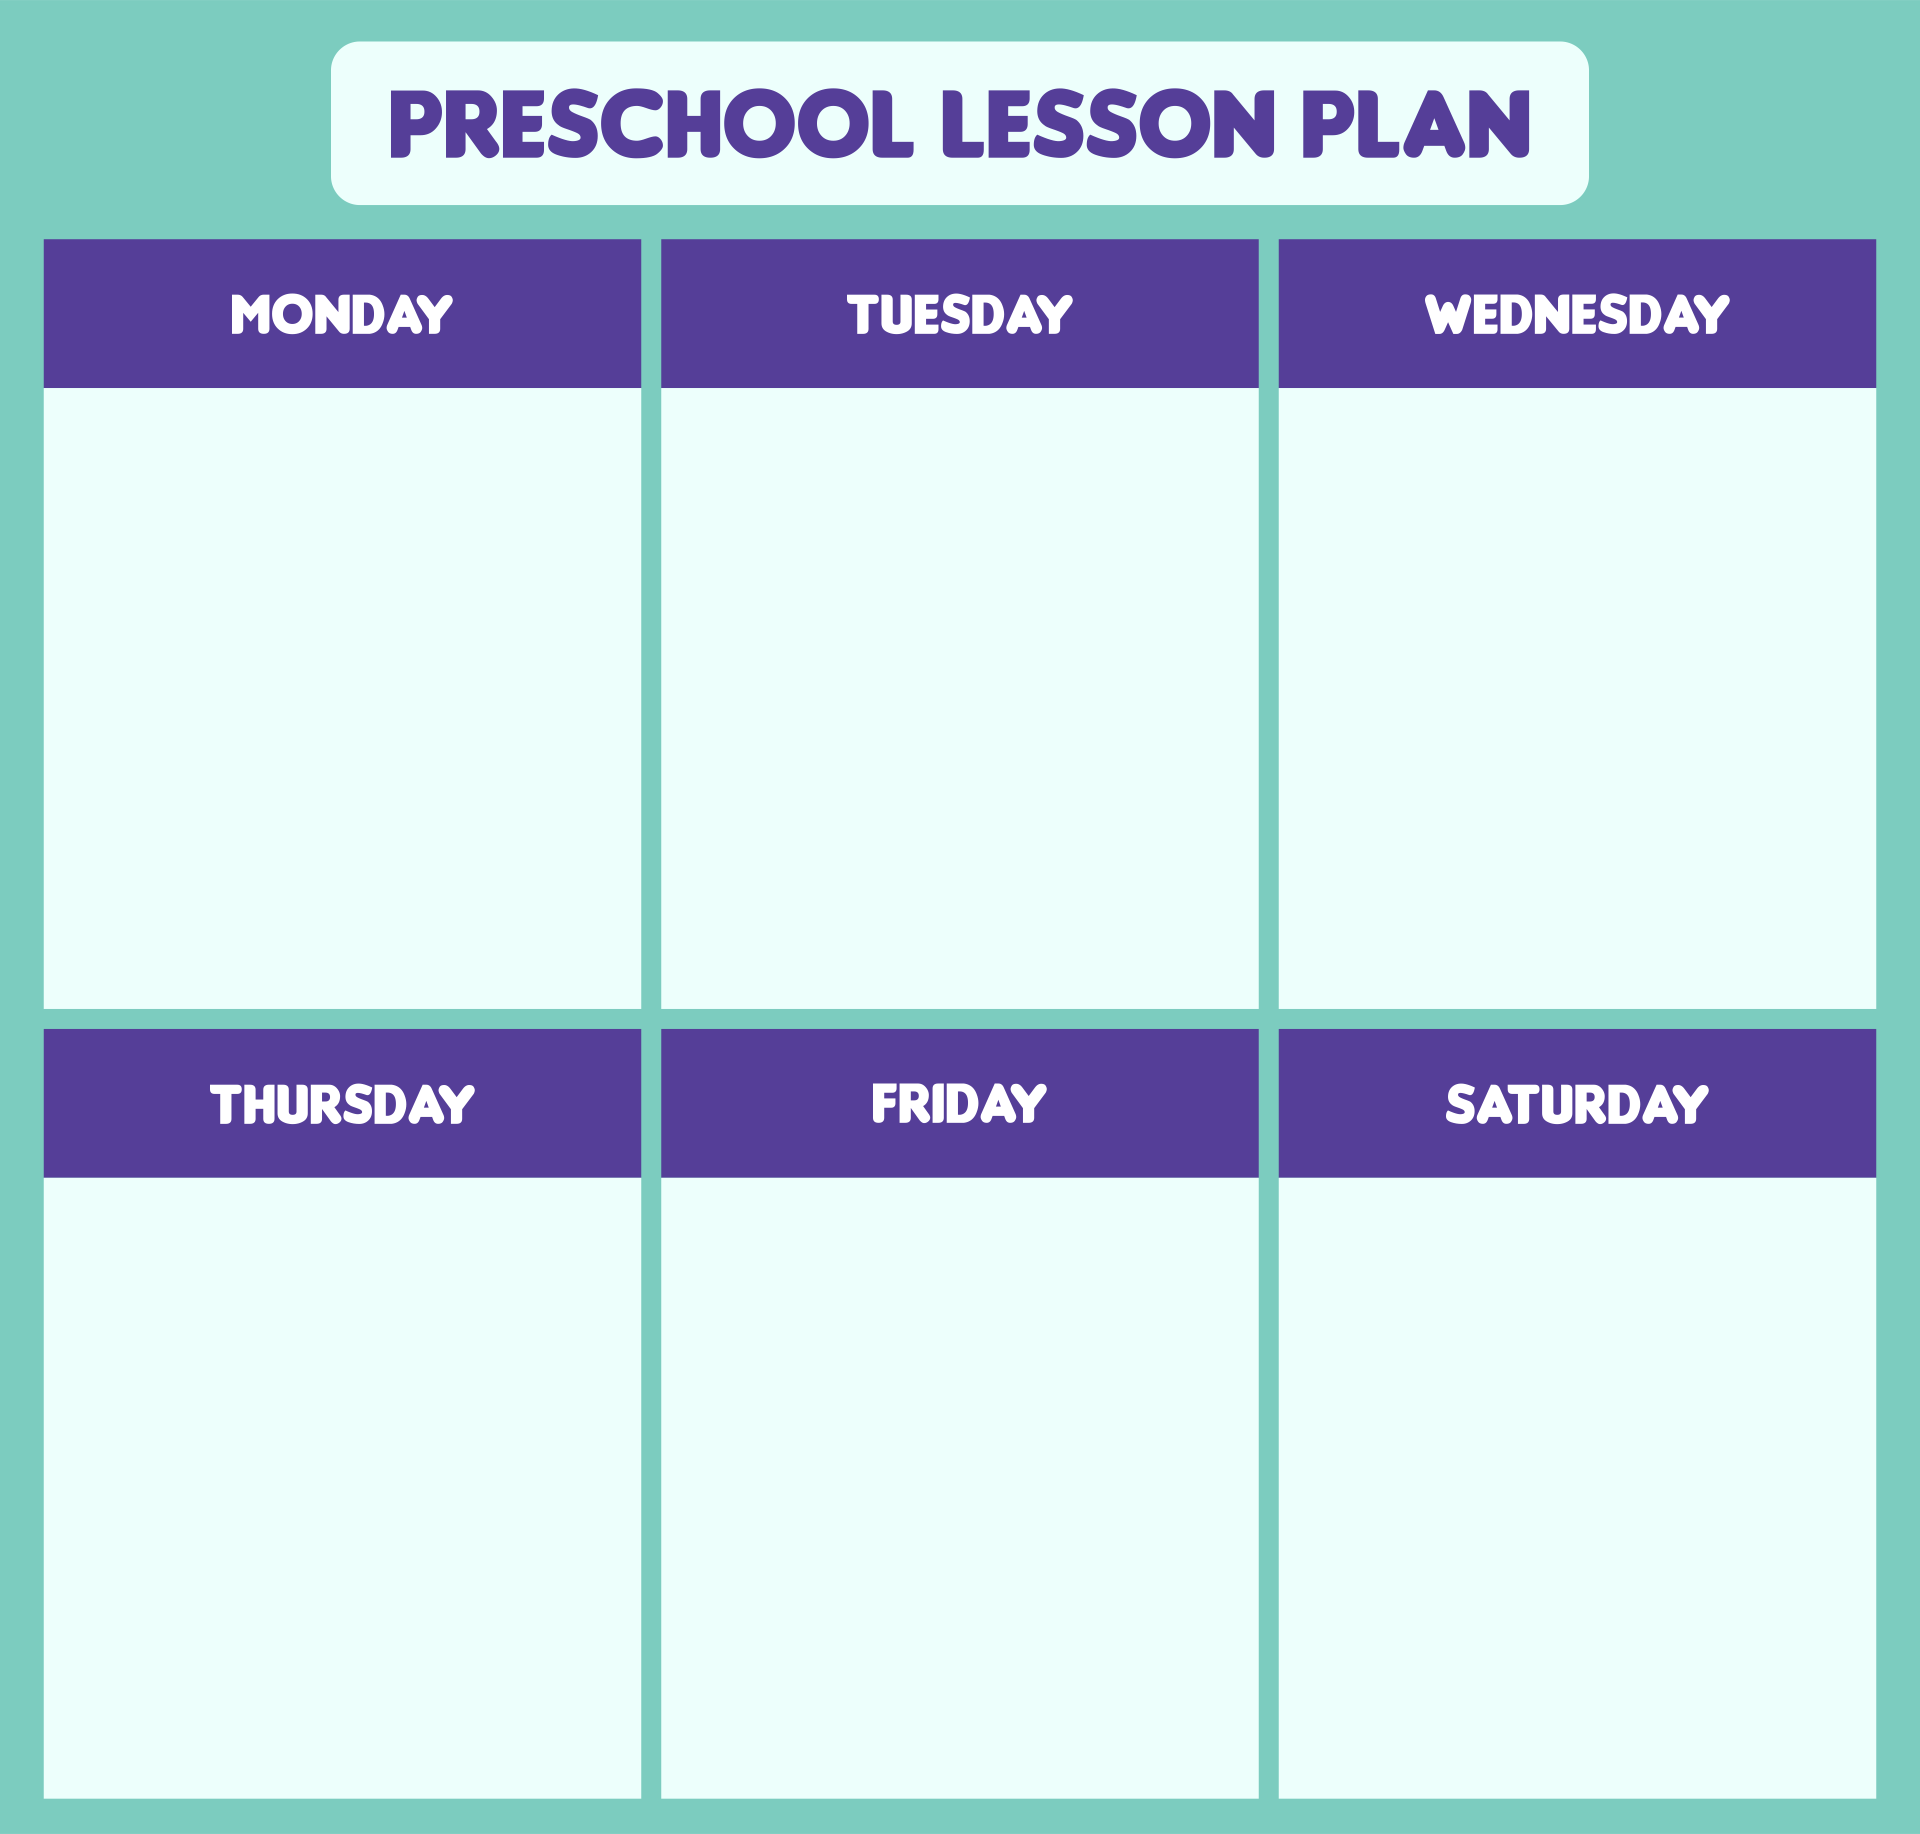 preschool-lesson-plan-doc-preschool-lesson-plan-template-lesson-vrogue